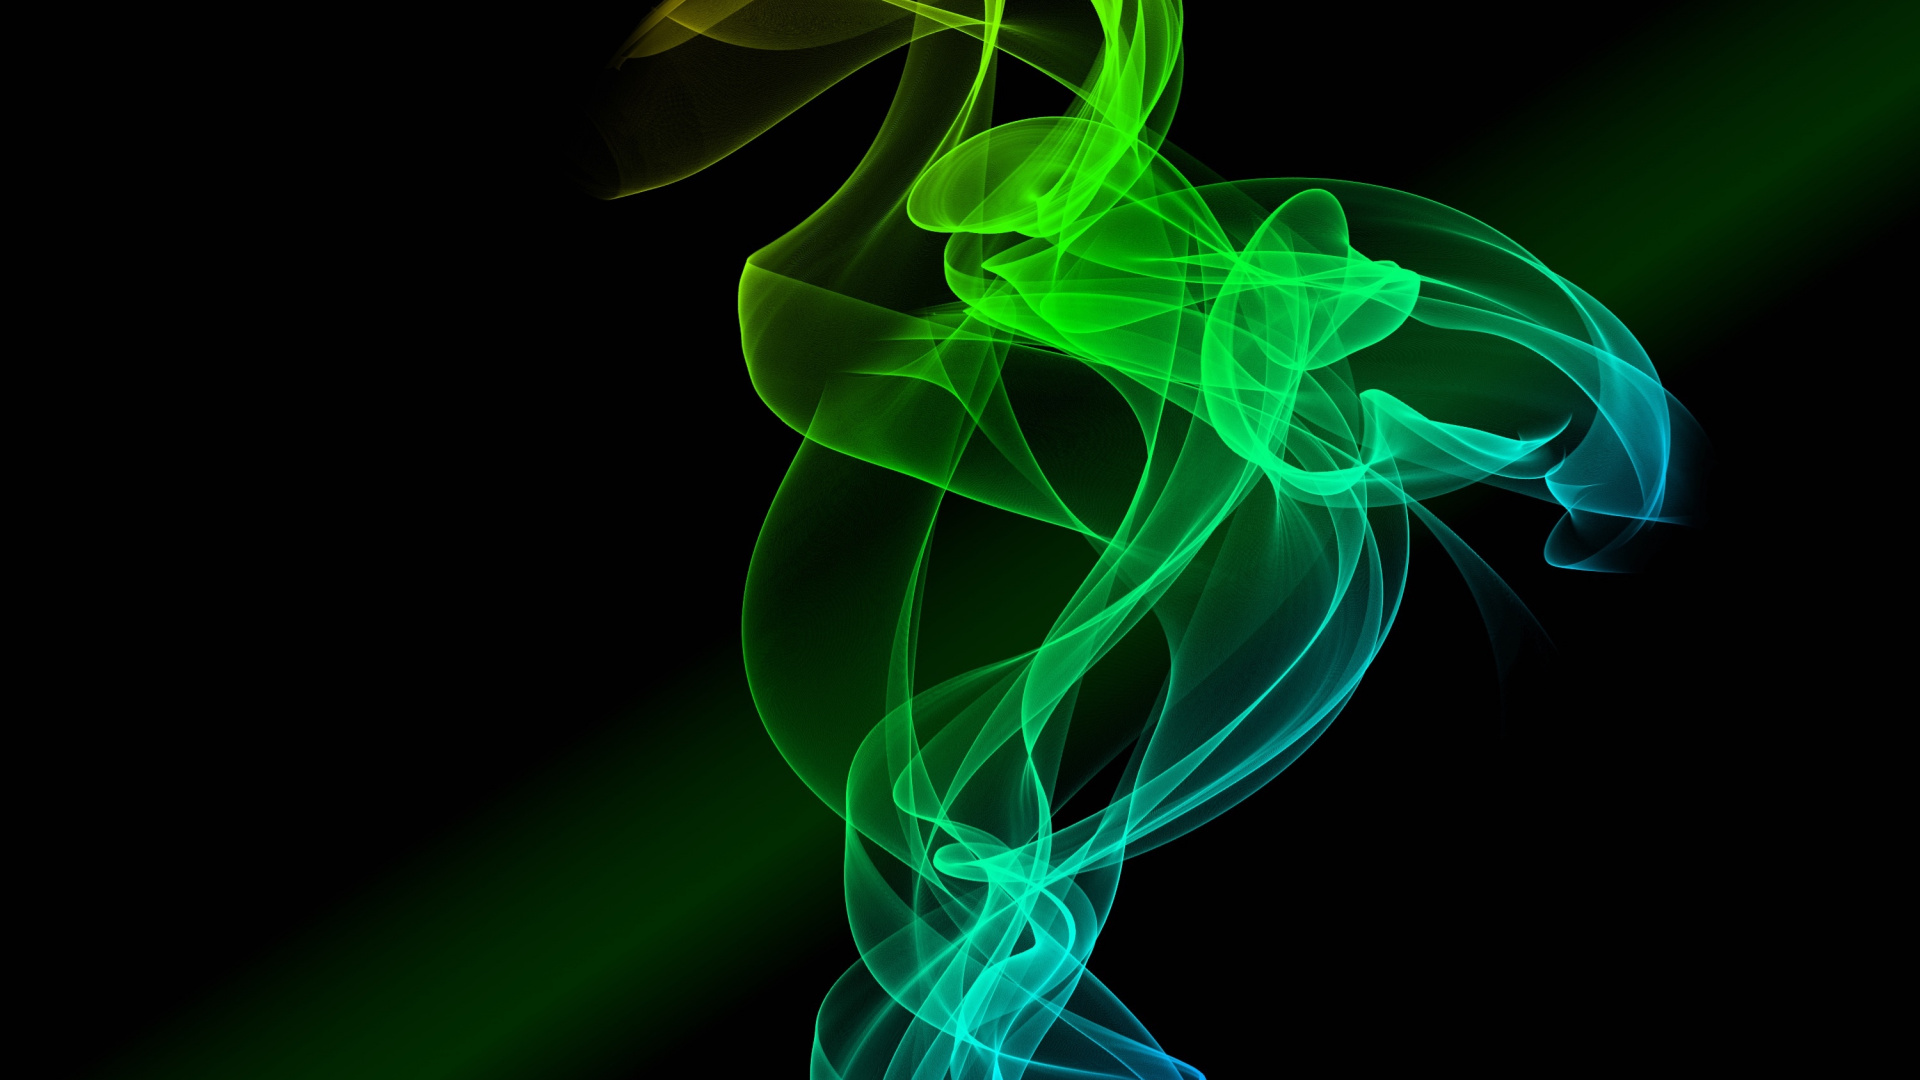 烟雾, 绿色的, 图形设计, 色彩, 光 壁纸 1920x1080 允许